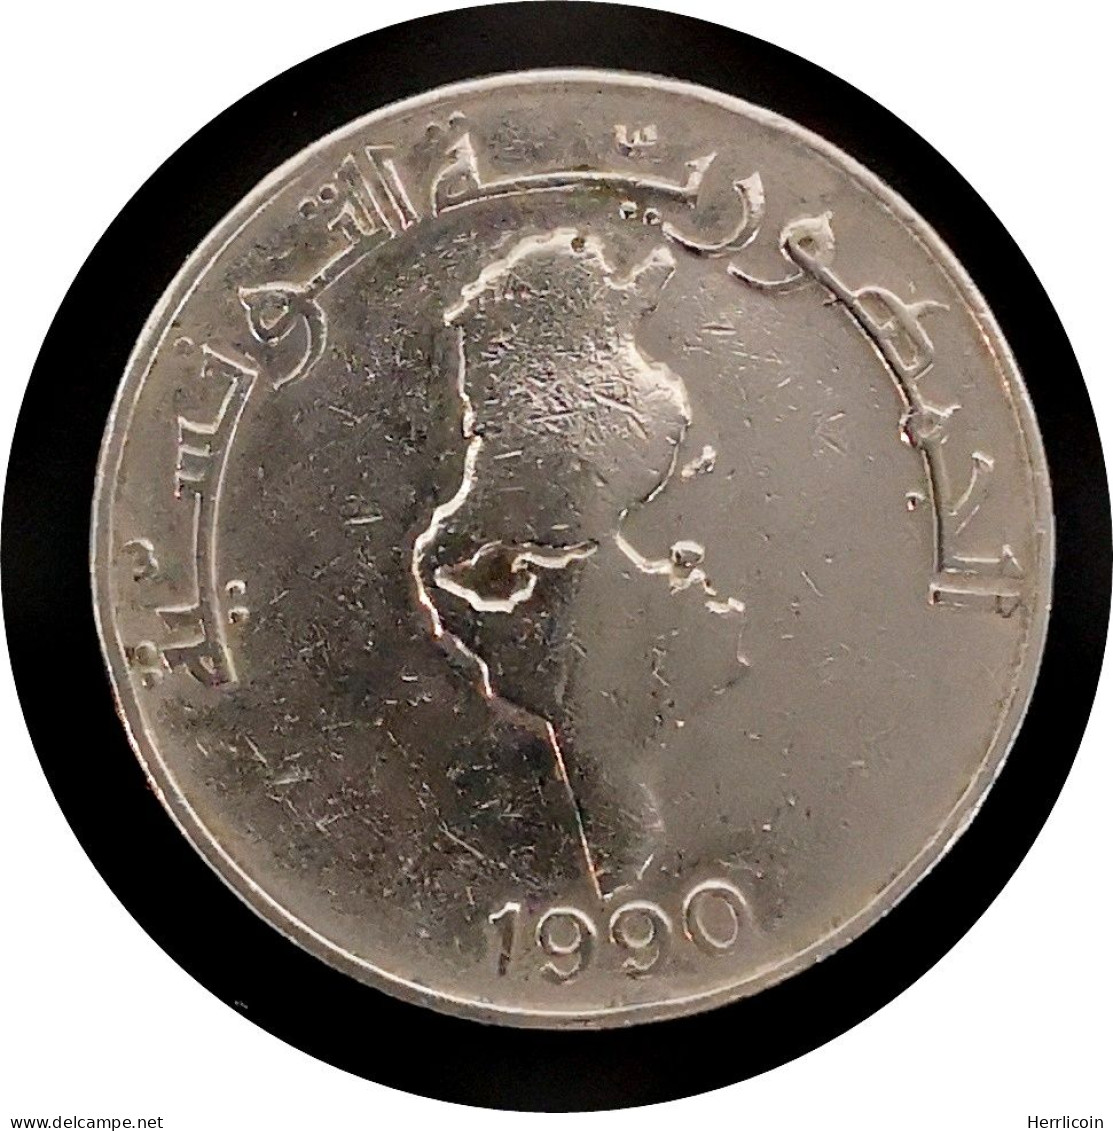 Monnaie Tunisie - 1990 - 1 Dinar FAO Carte - Tunisie